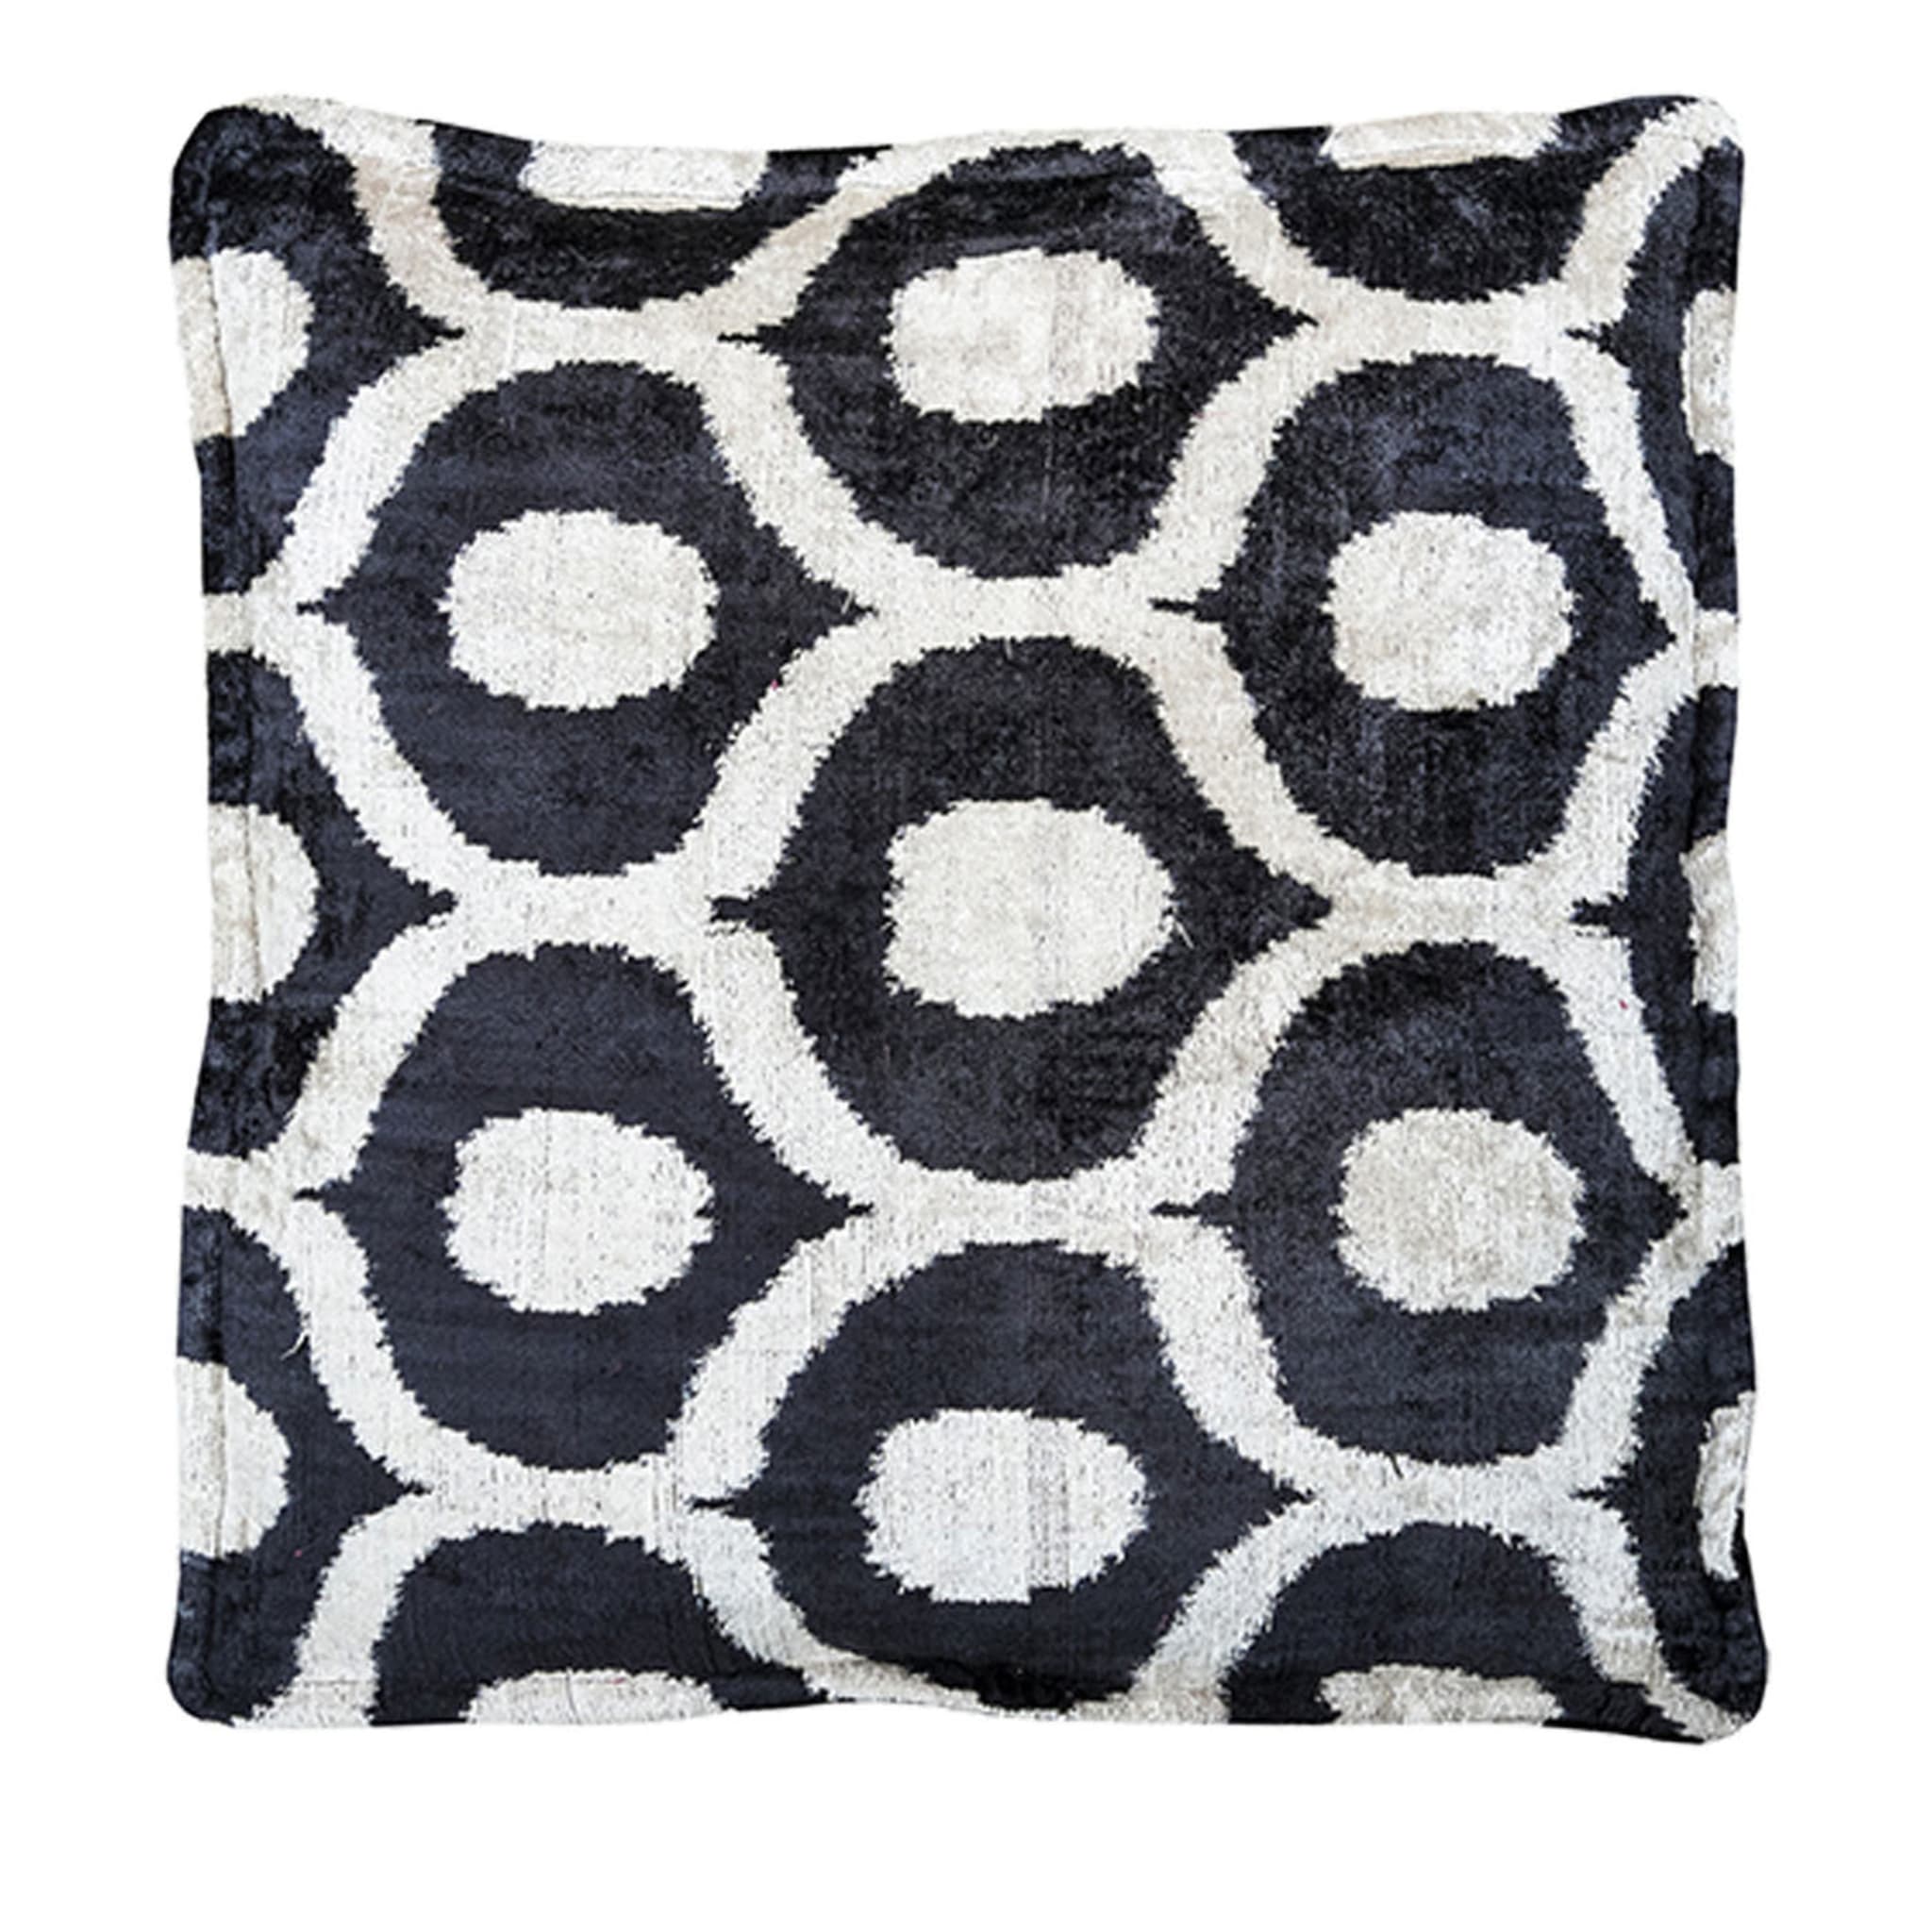 Silk Velvet Floor Cushion in Black and White - Main view